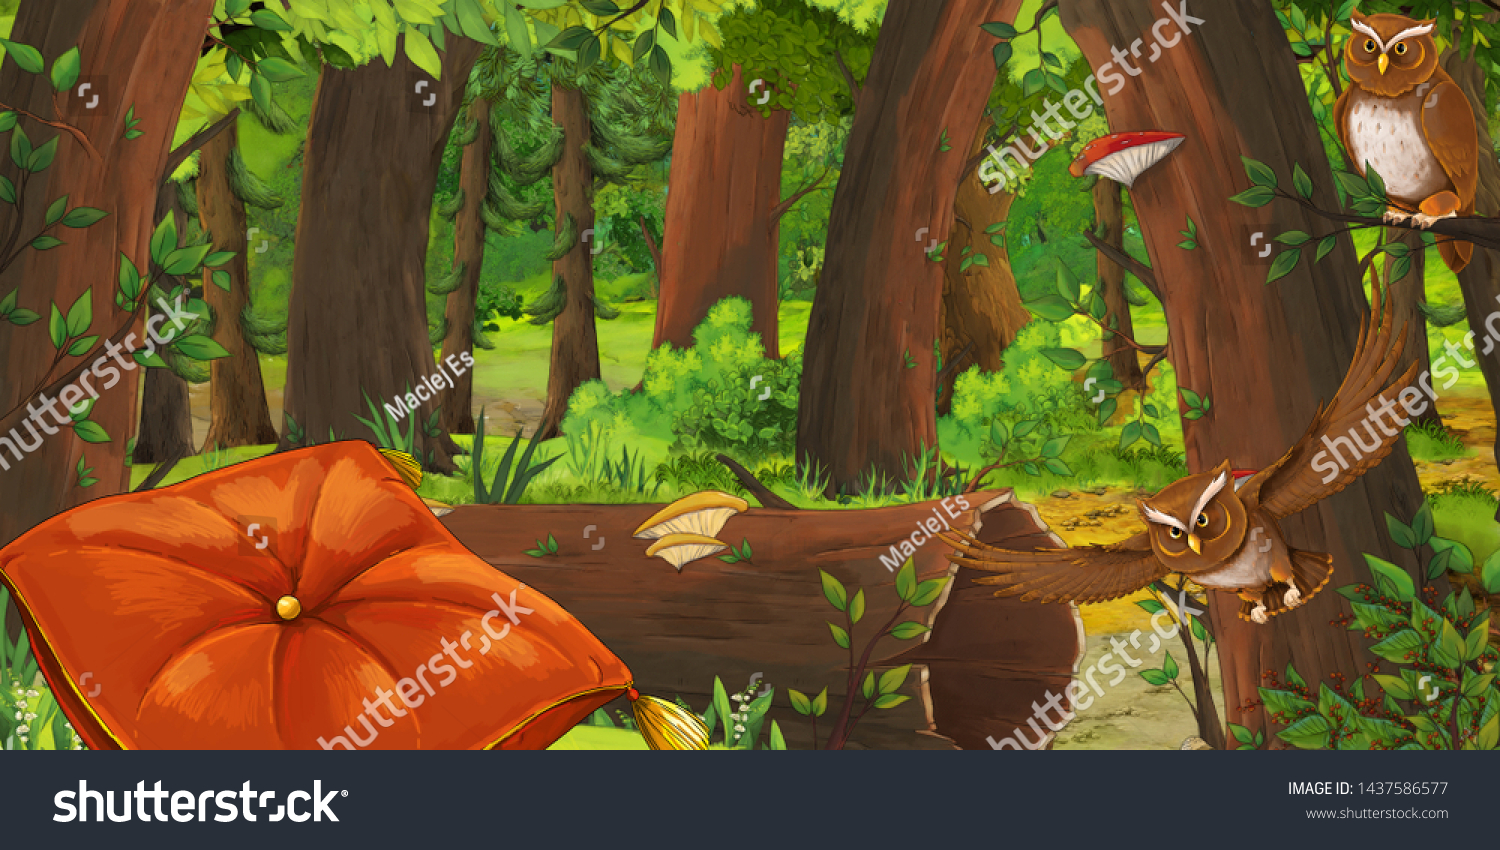 深い森と鳥のフクロウと枕を含むアニメの夏のシーン 誰もシーンにない 子ども向けのイラトス のイラスト素材